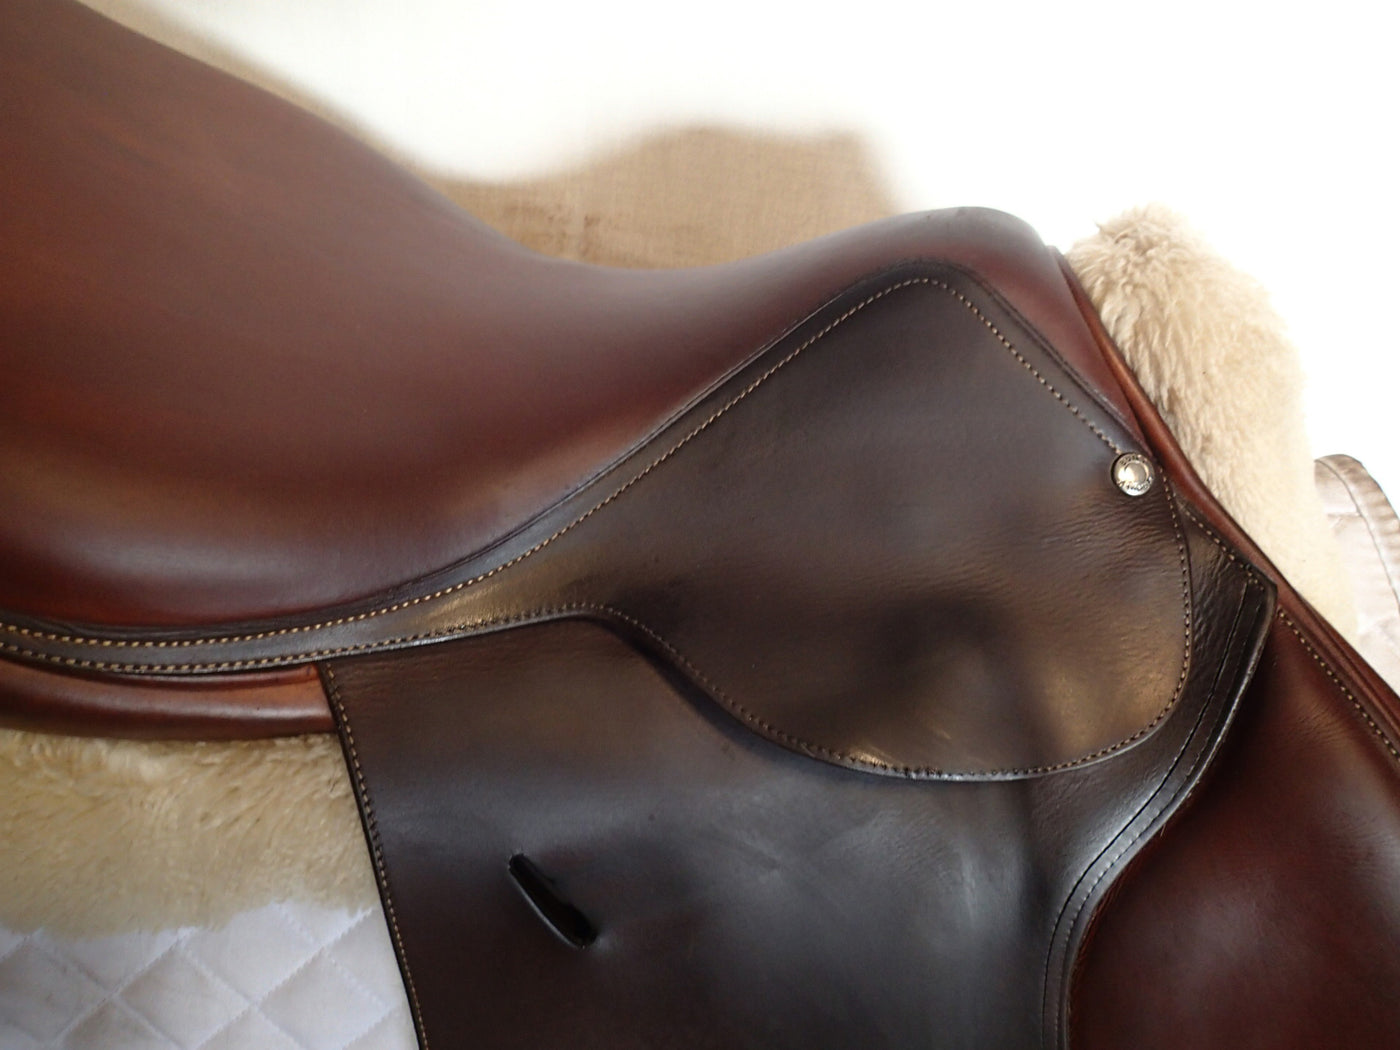 18" Butet Saddle - 2015 - M Seat - 3.25 Flaps - 4.25" dot to dot